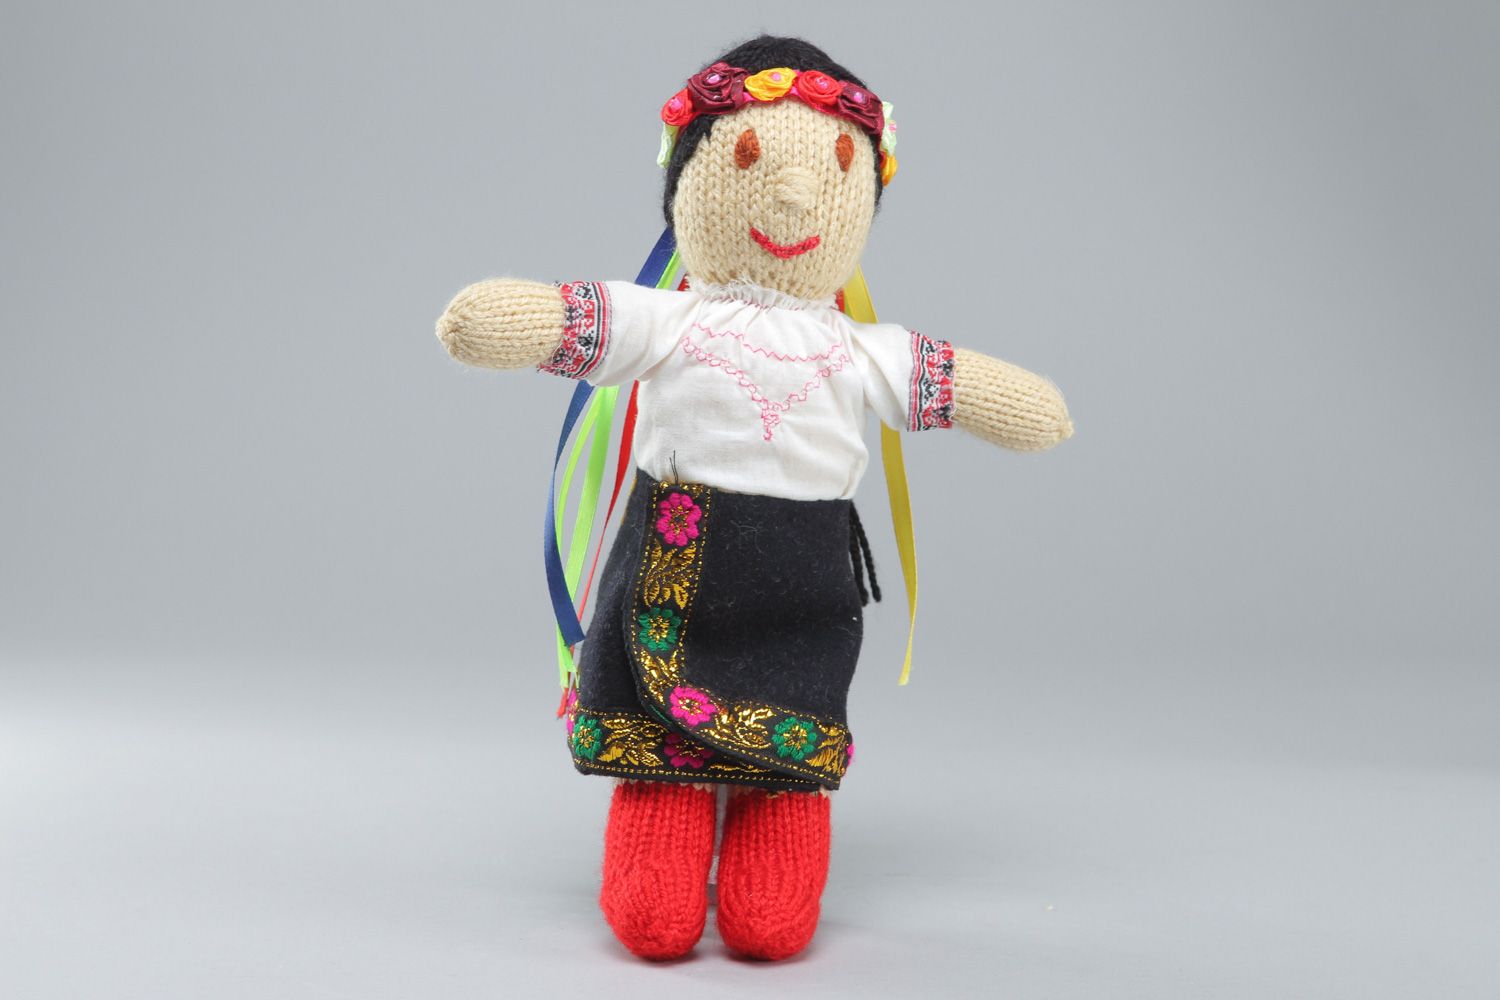 Designer künstlerische Ethno Acryl handmade Puppe aus Fäden gestickt Ukrainerin  foto 1